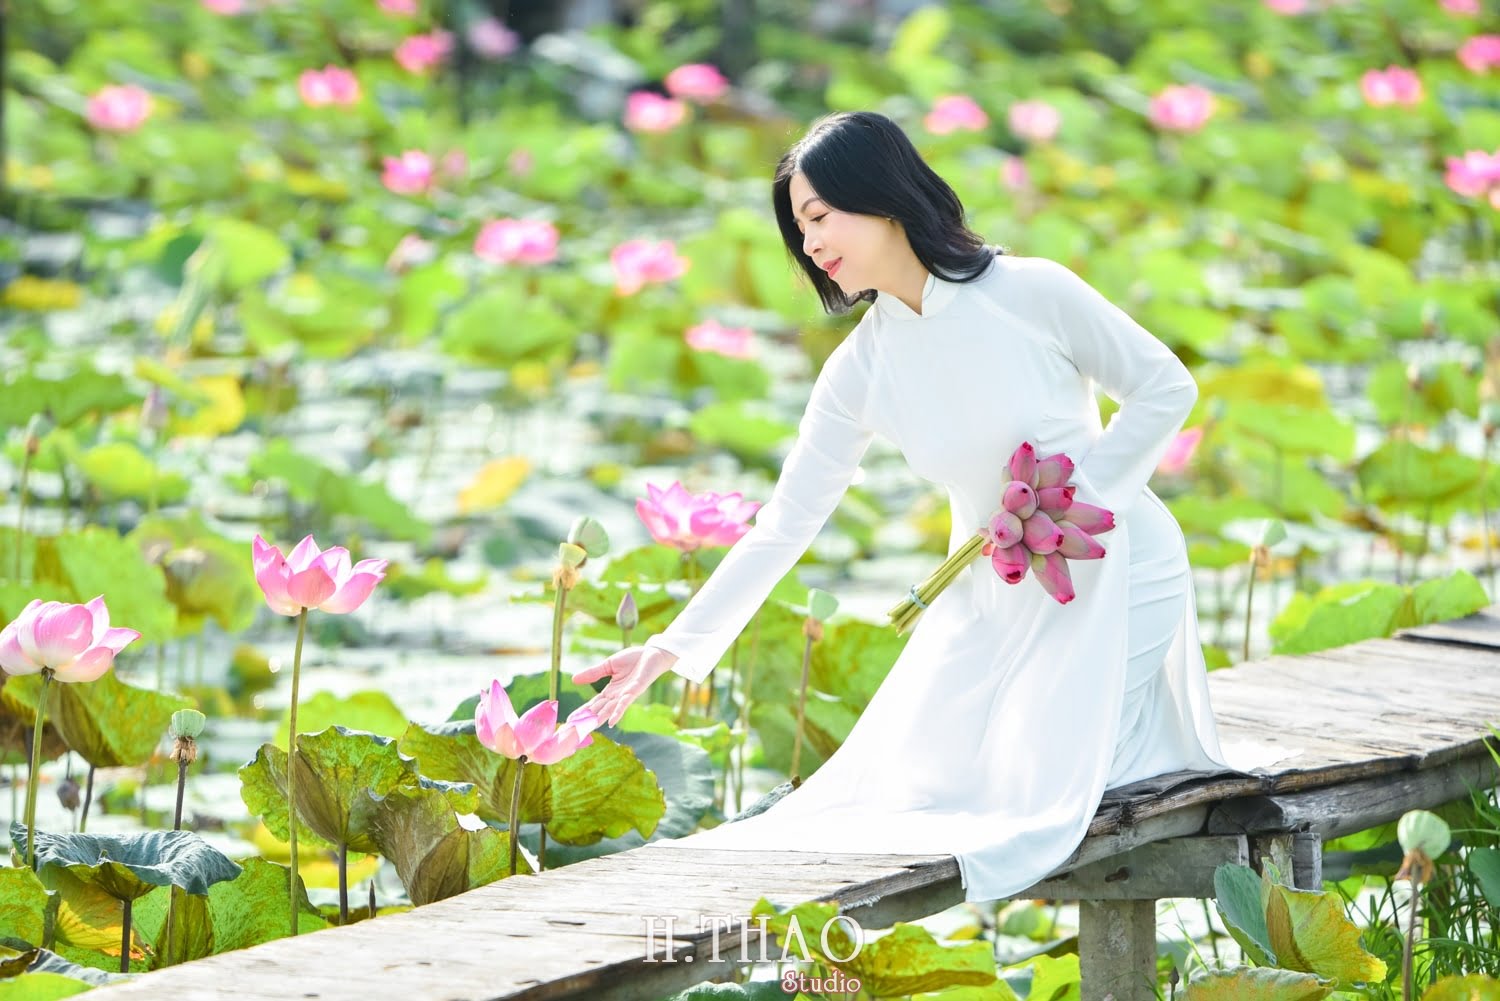 Anh Hoa sen 8 min - Studio chuyên chụp ảnh với hoa sen đẹp, giá rẻ Tp.HCM – HThao Studio